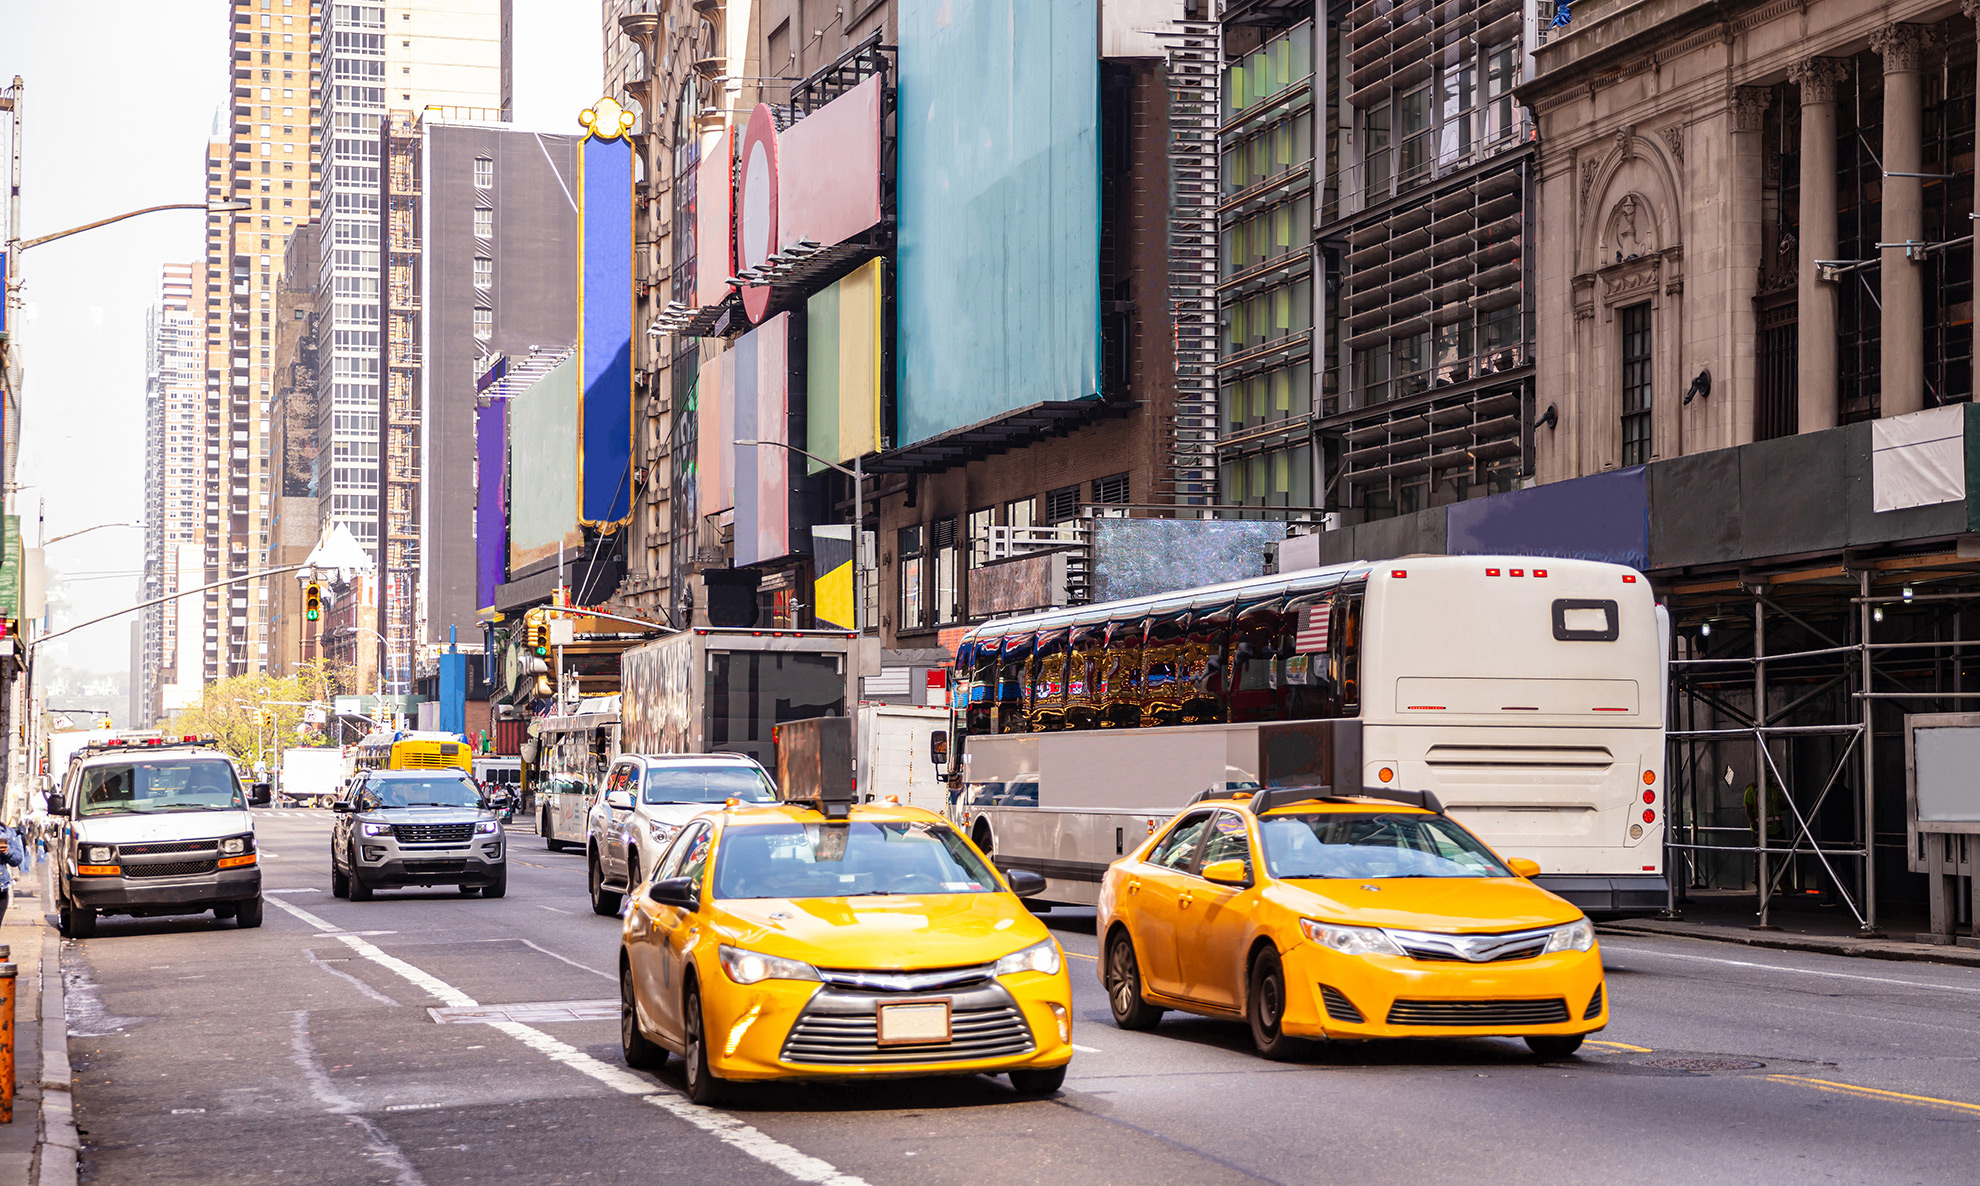 Samochody na ulicy w Nowym Jorku, ilustracja do artykułu o małych tablicach dla samochodów z USA i Japonii